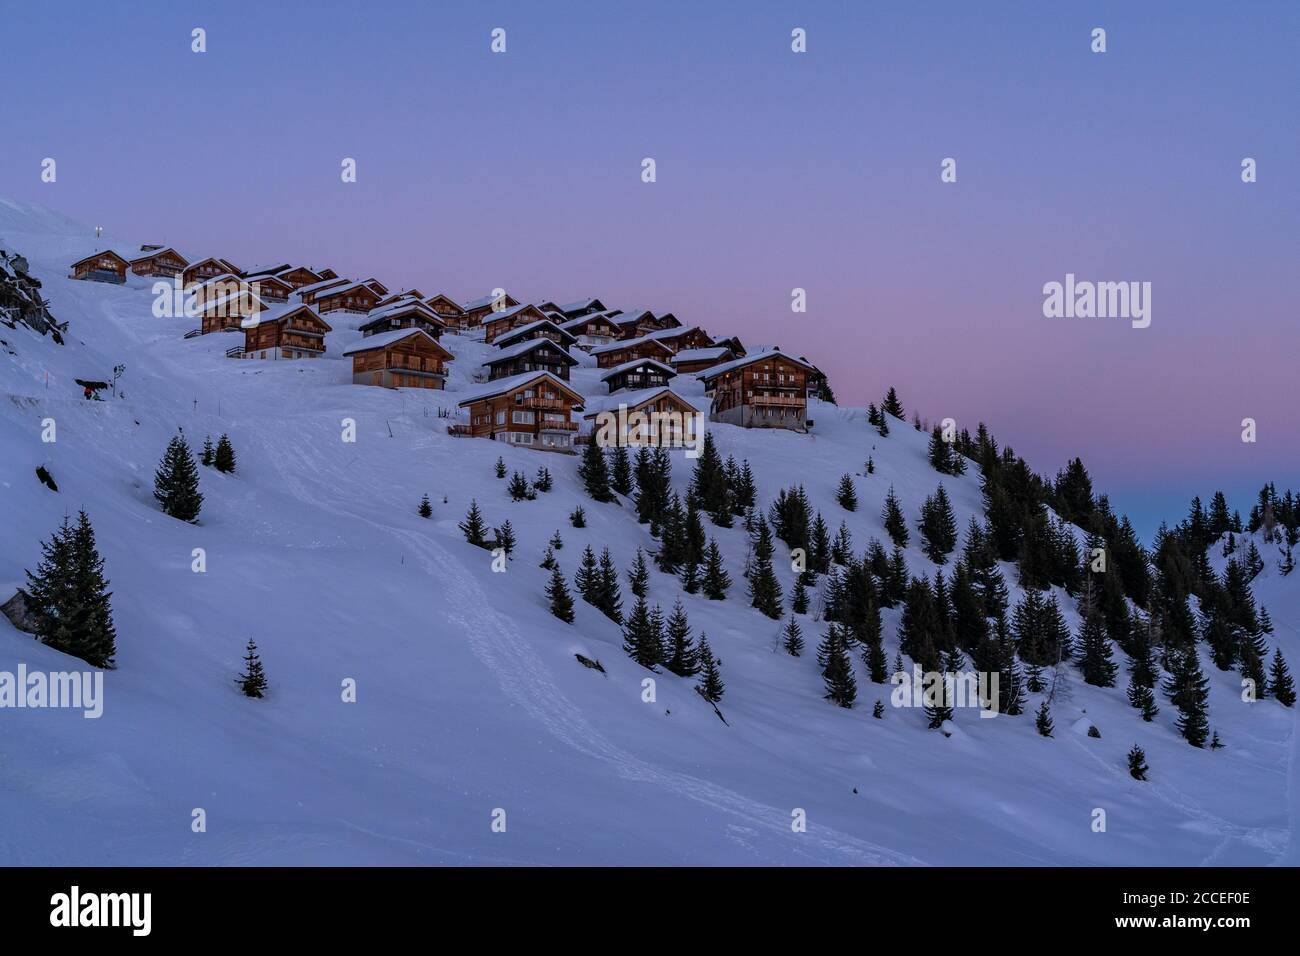 Europa, Schweiz, Wallis, Belalp, stimmungsvoller Sonnenuntergang im Bergdorf Belalp Stockfoto